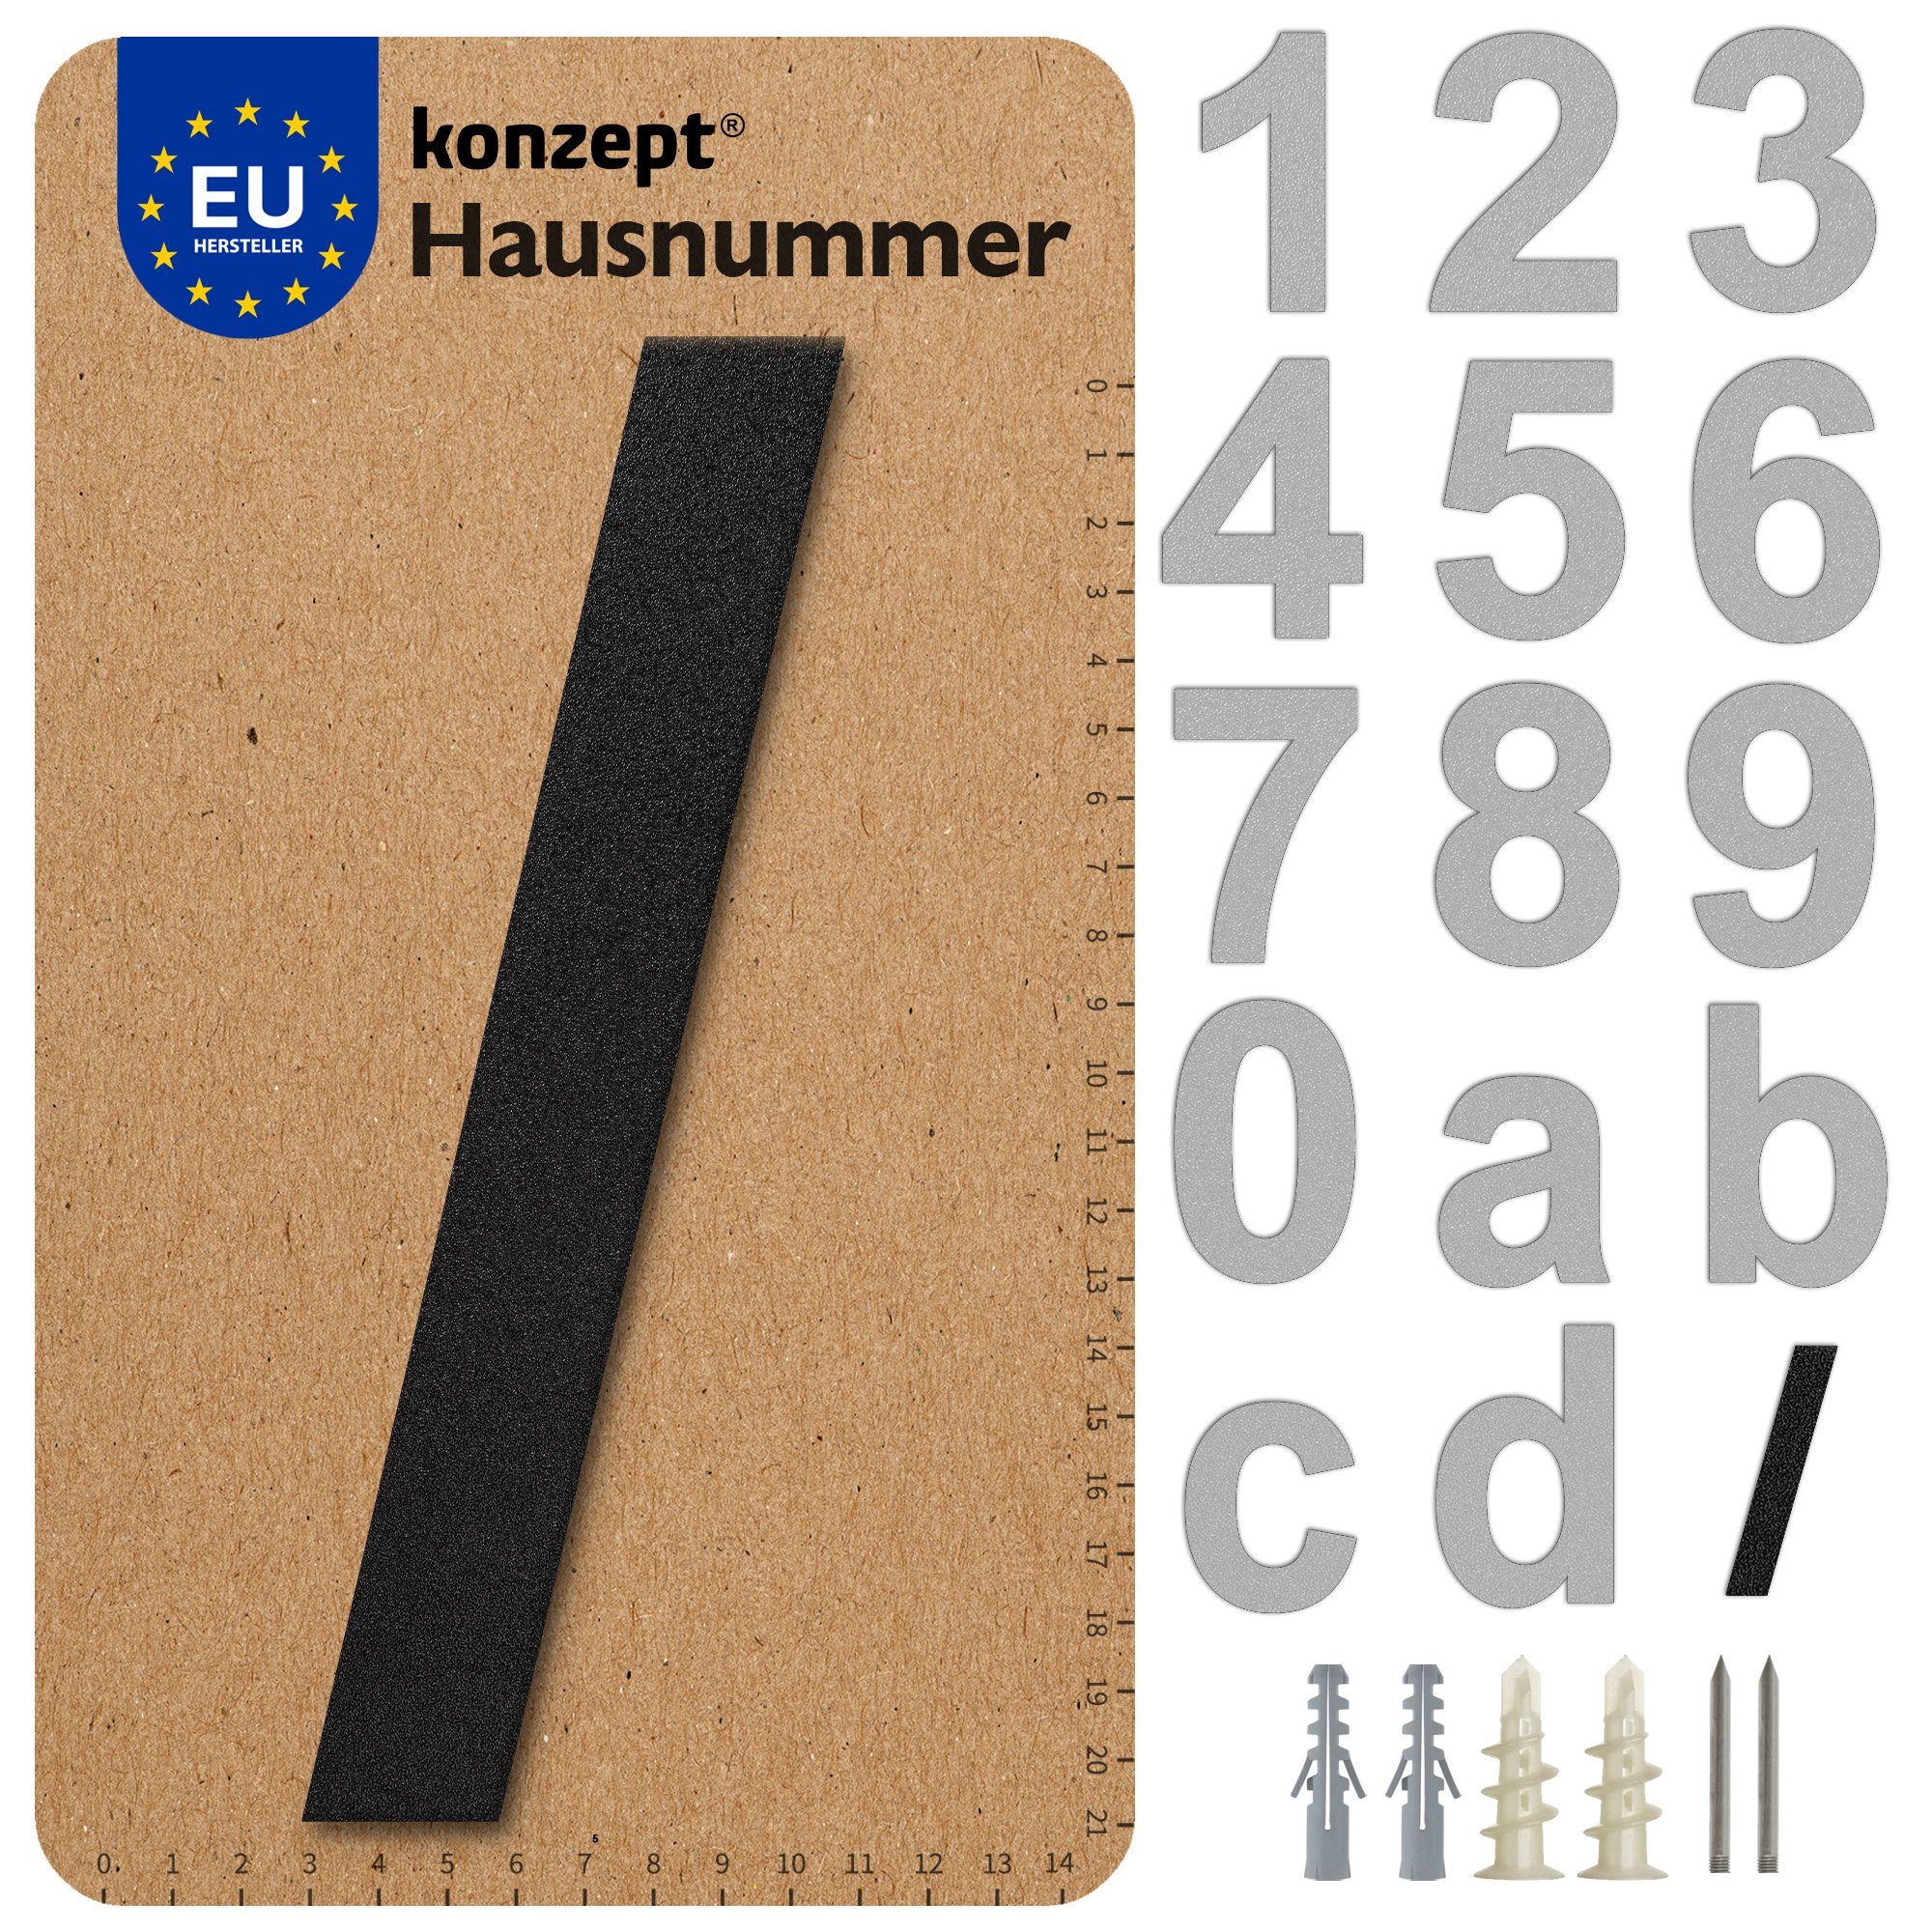 KONZEPT Hausnummer in Schwarz, Briefkastennummer von 0 bis 9, (aus massiven Stahl mit witterungsbeständiger, Pulverbeschichtung), Metallbuchstaben A/B/C/D/F und /